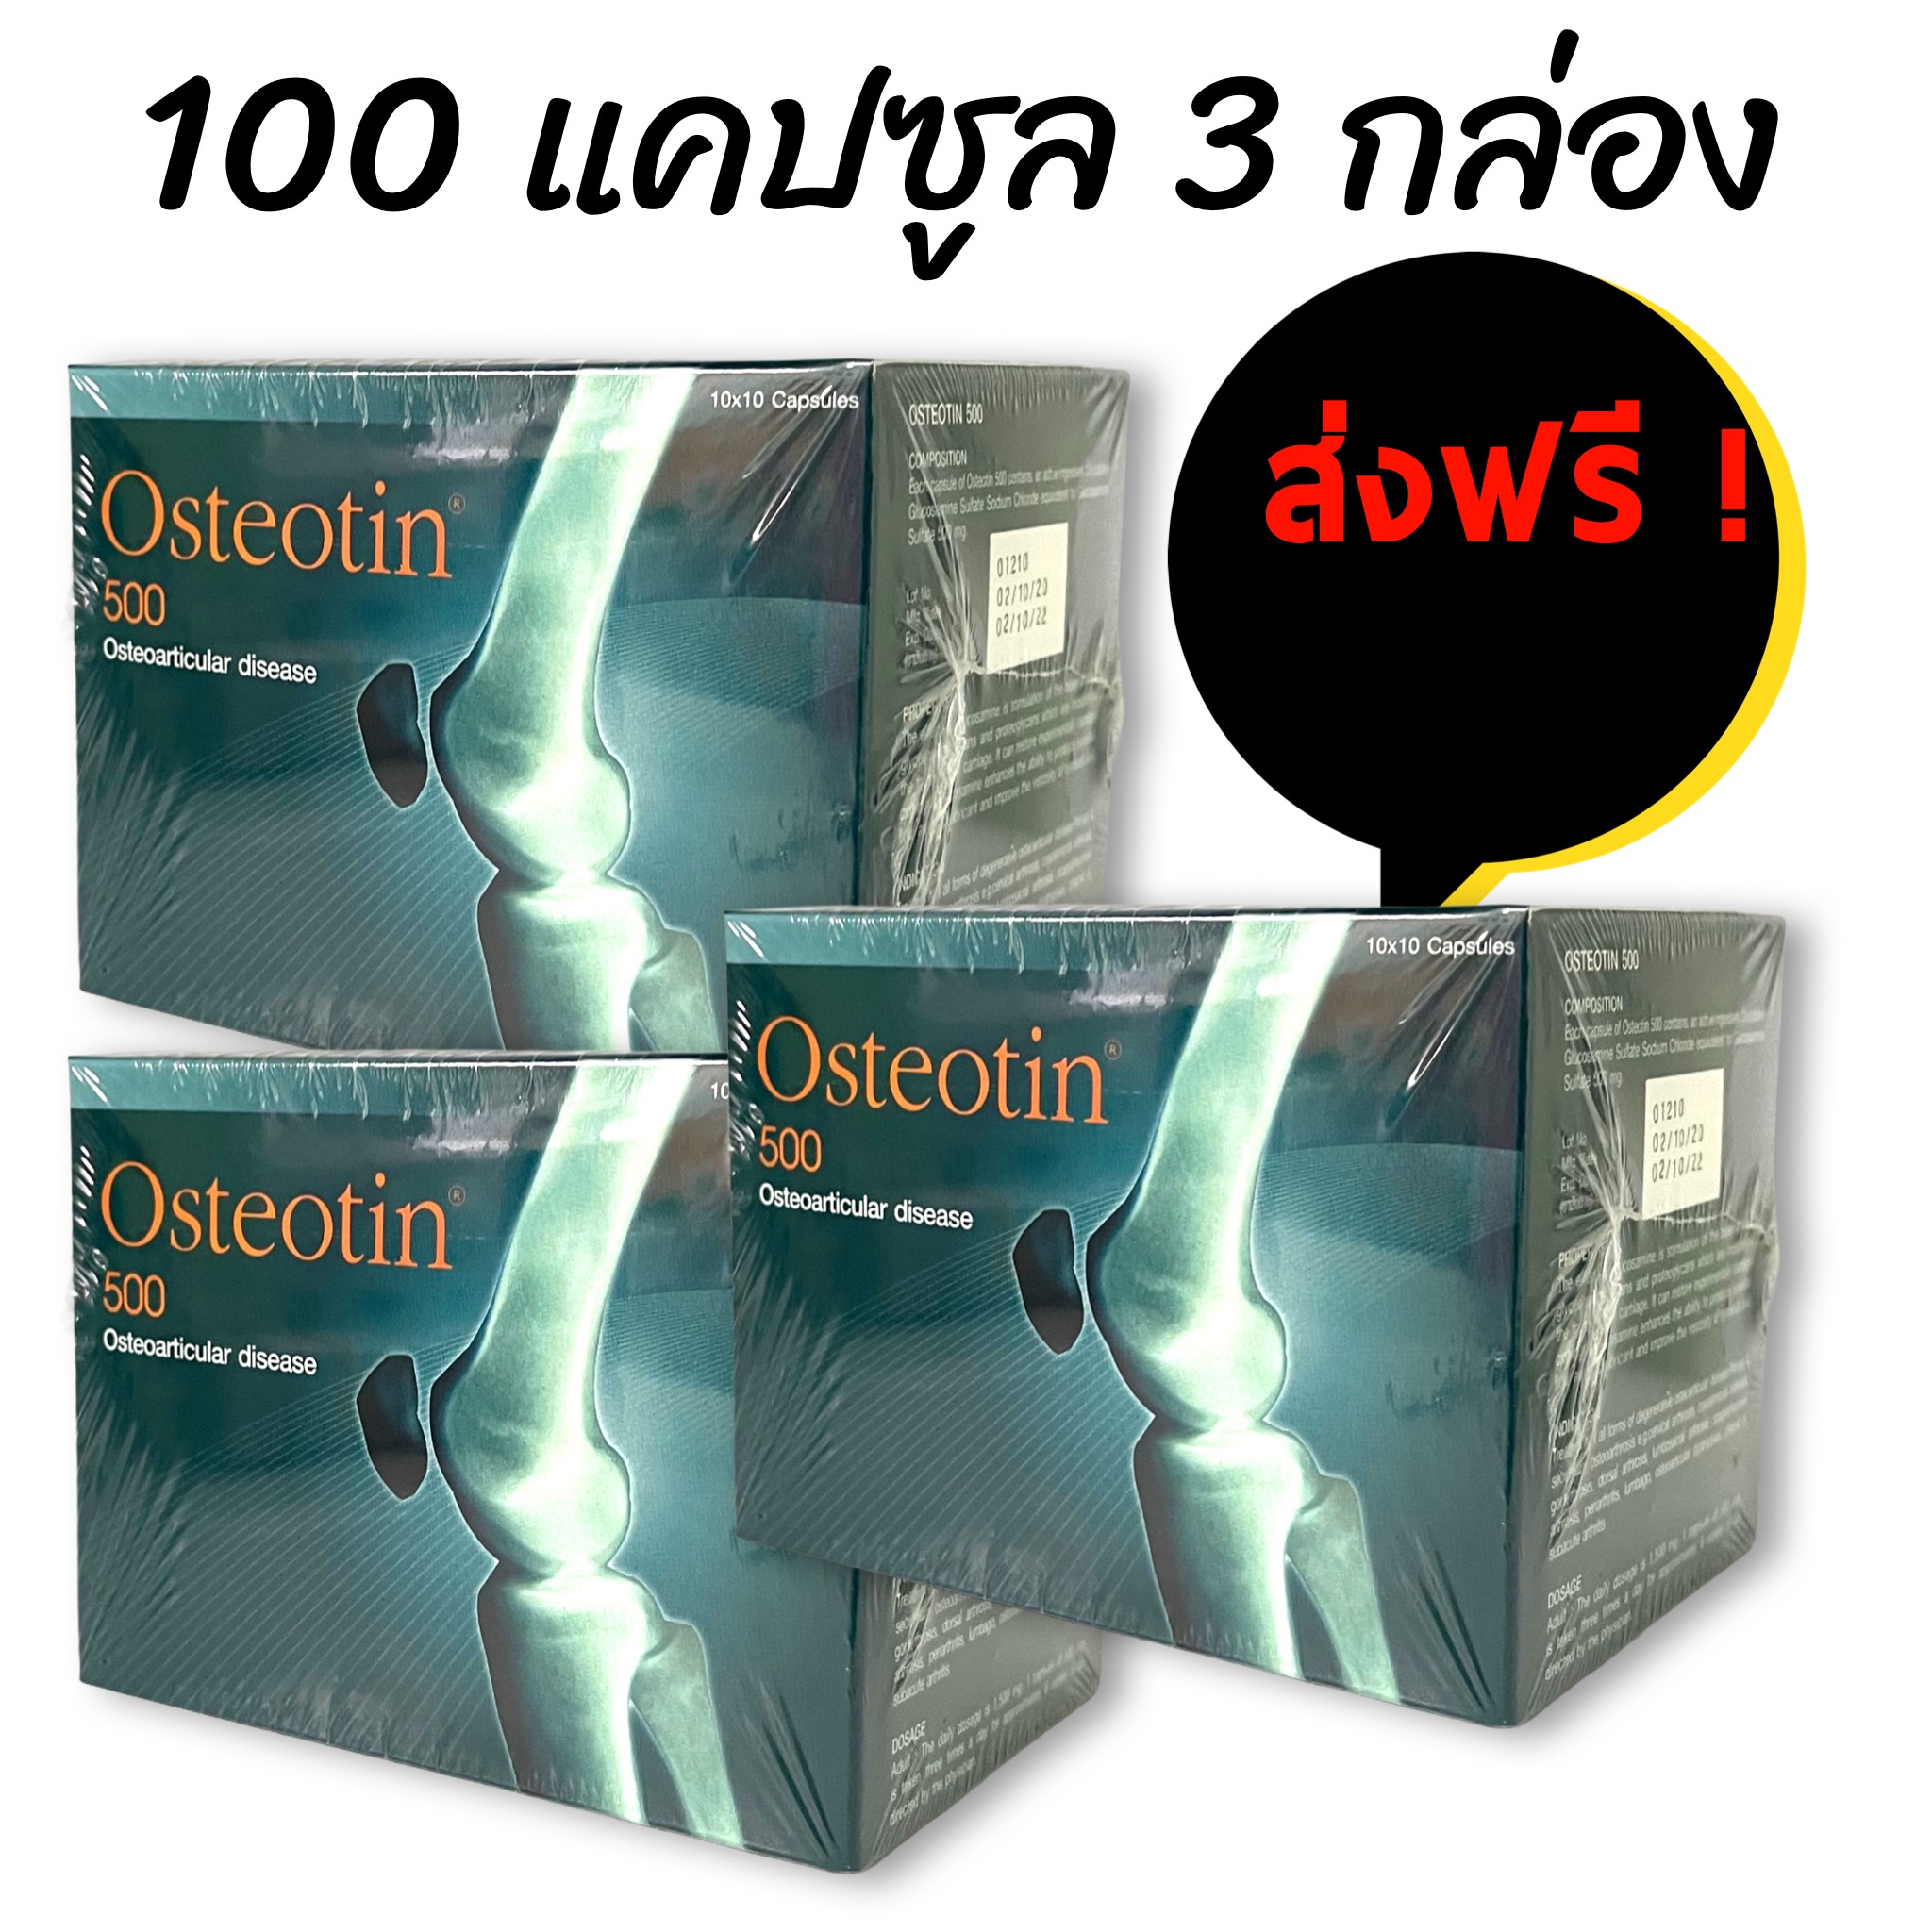 ออสติโอติน 500 แคปซูล Osteotin 500 mg. Glucosamine 500 capsule กลูโคซามีน ***** กล่องละ 100 แคปซูล แพคละ 3 กล่อง ***** ส่งฟรี!!!!!